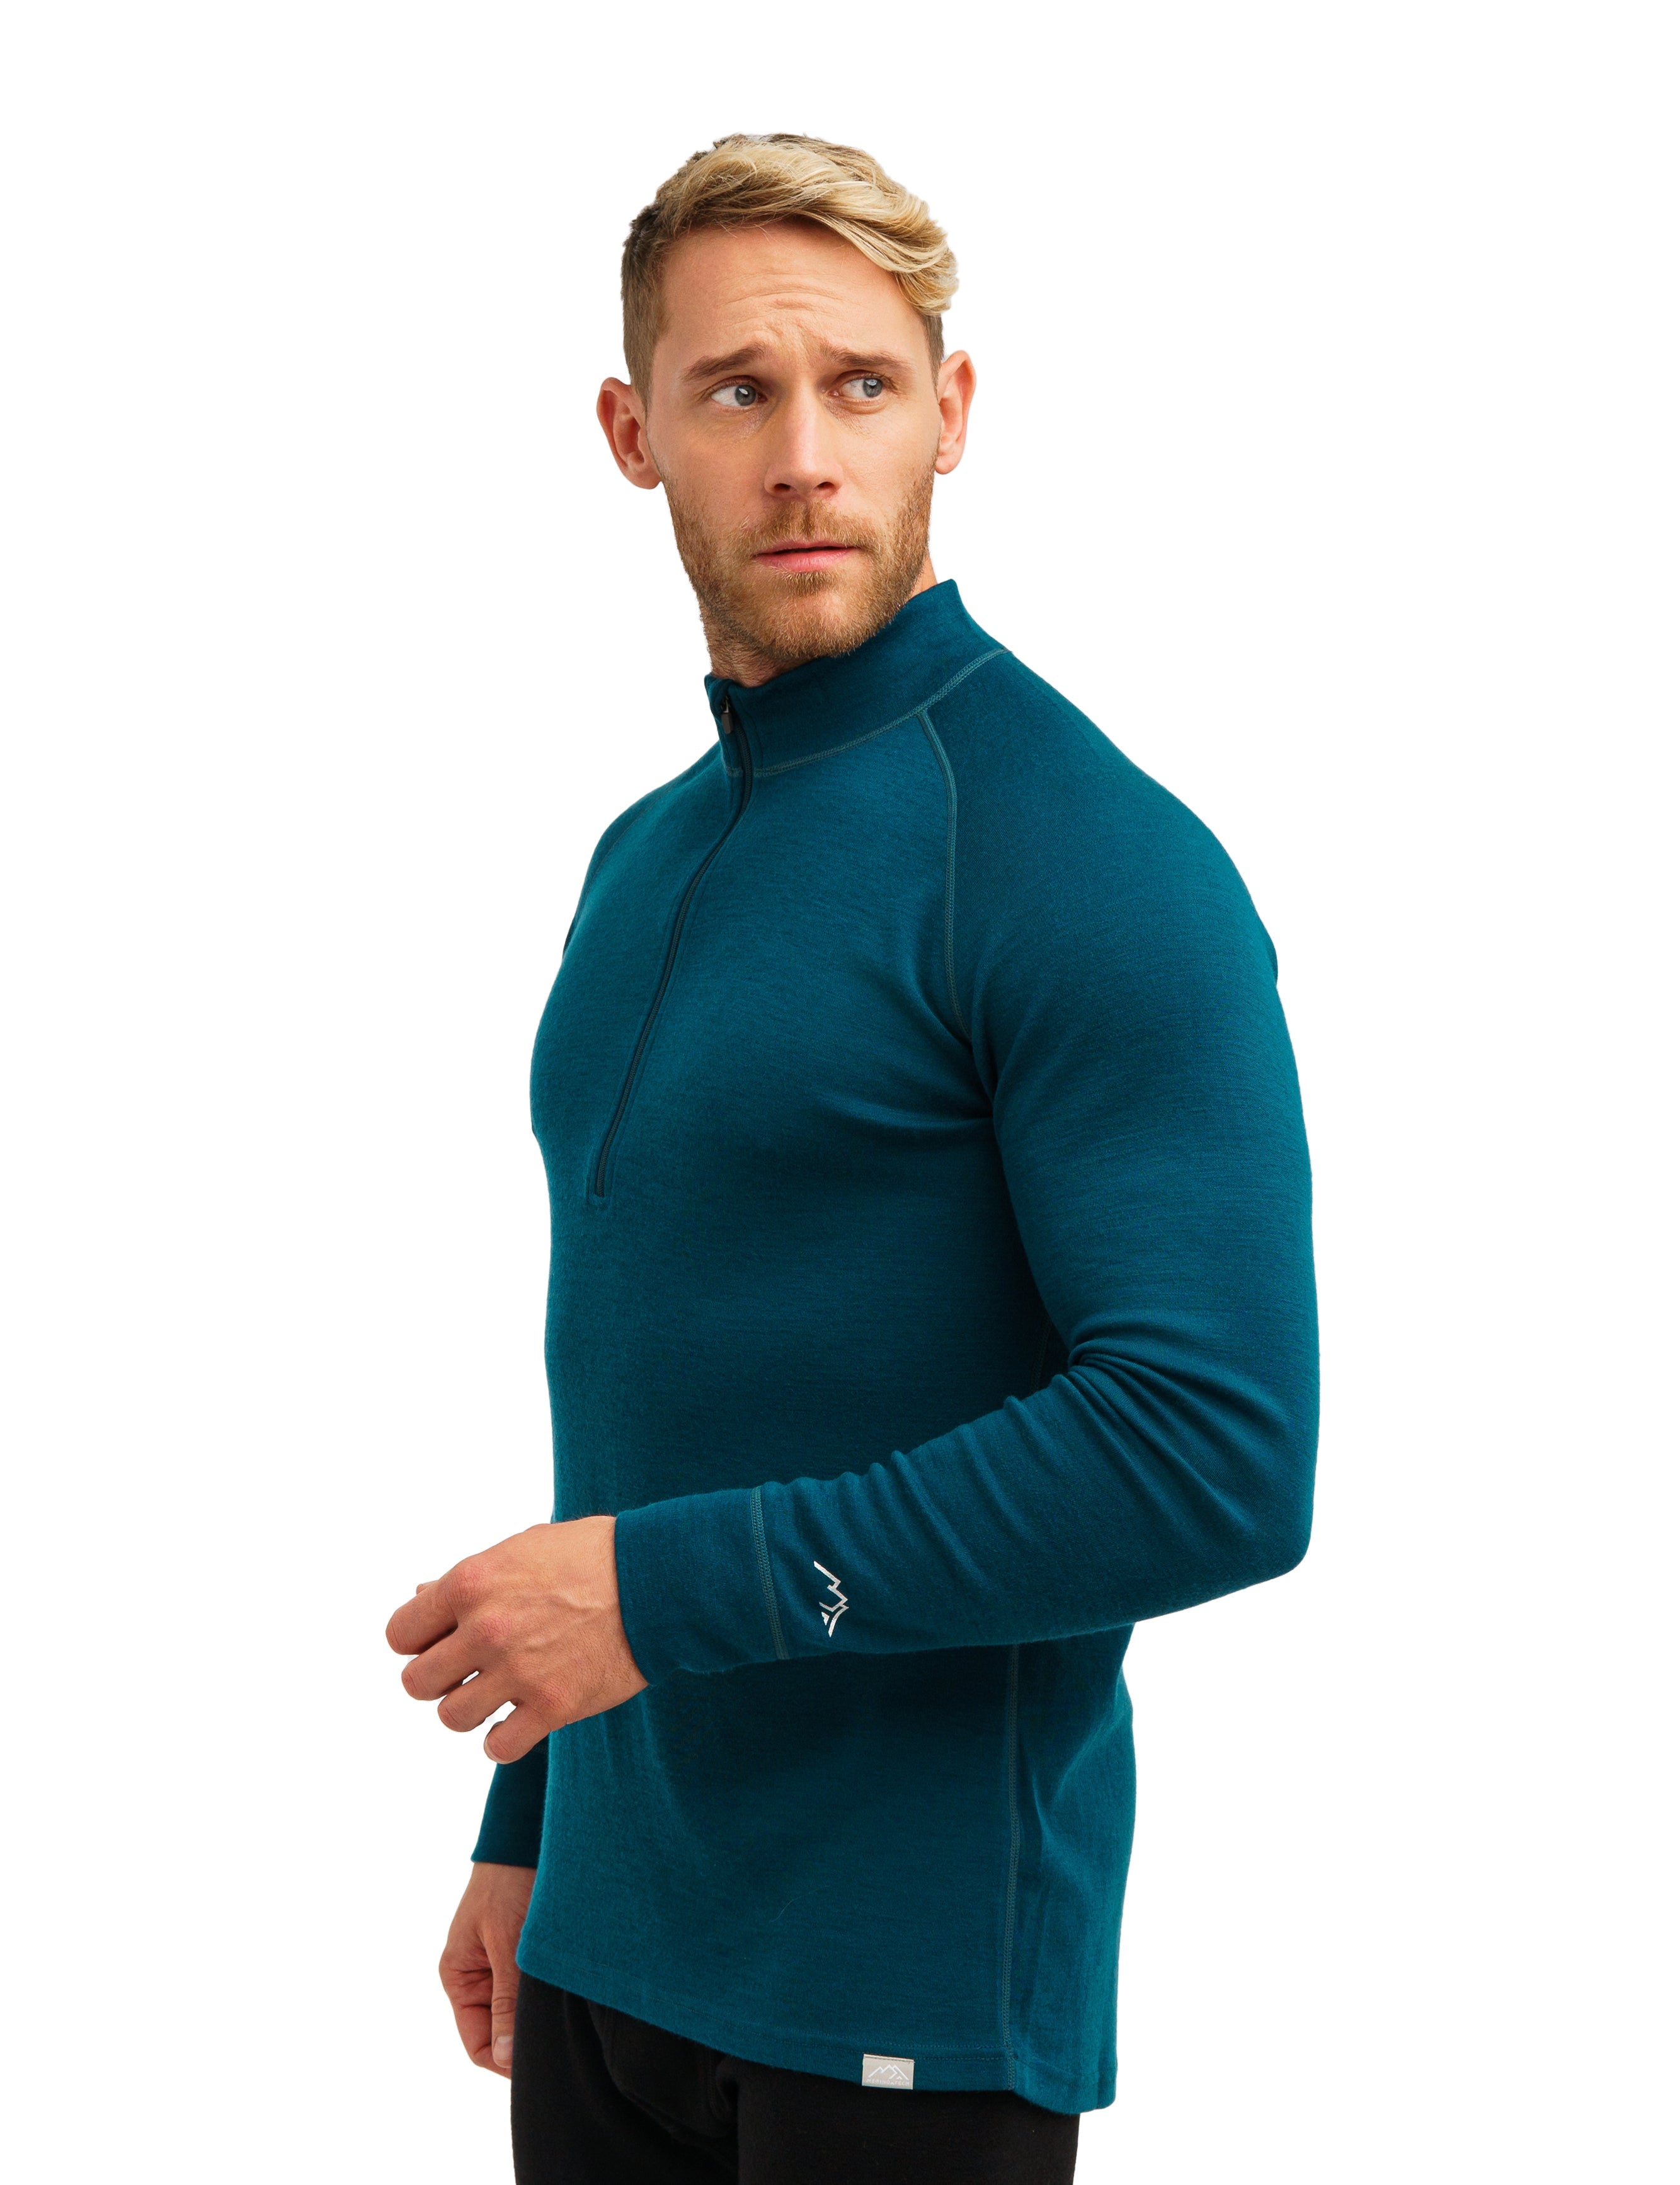 Men's Merino Wool Half Zip Base Layer Tops for Adjustable Comfort 